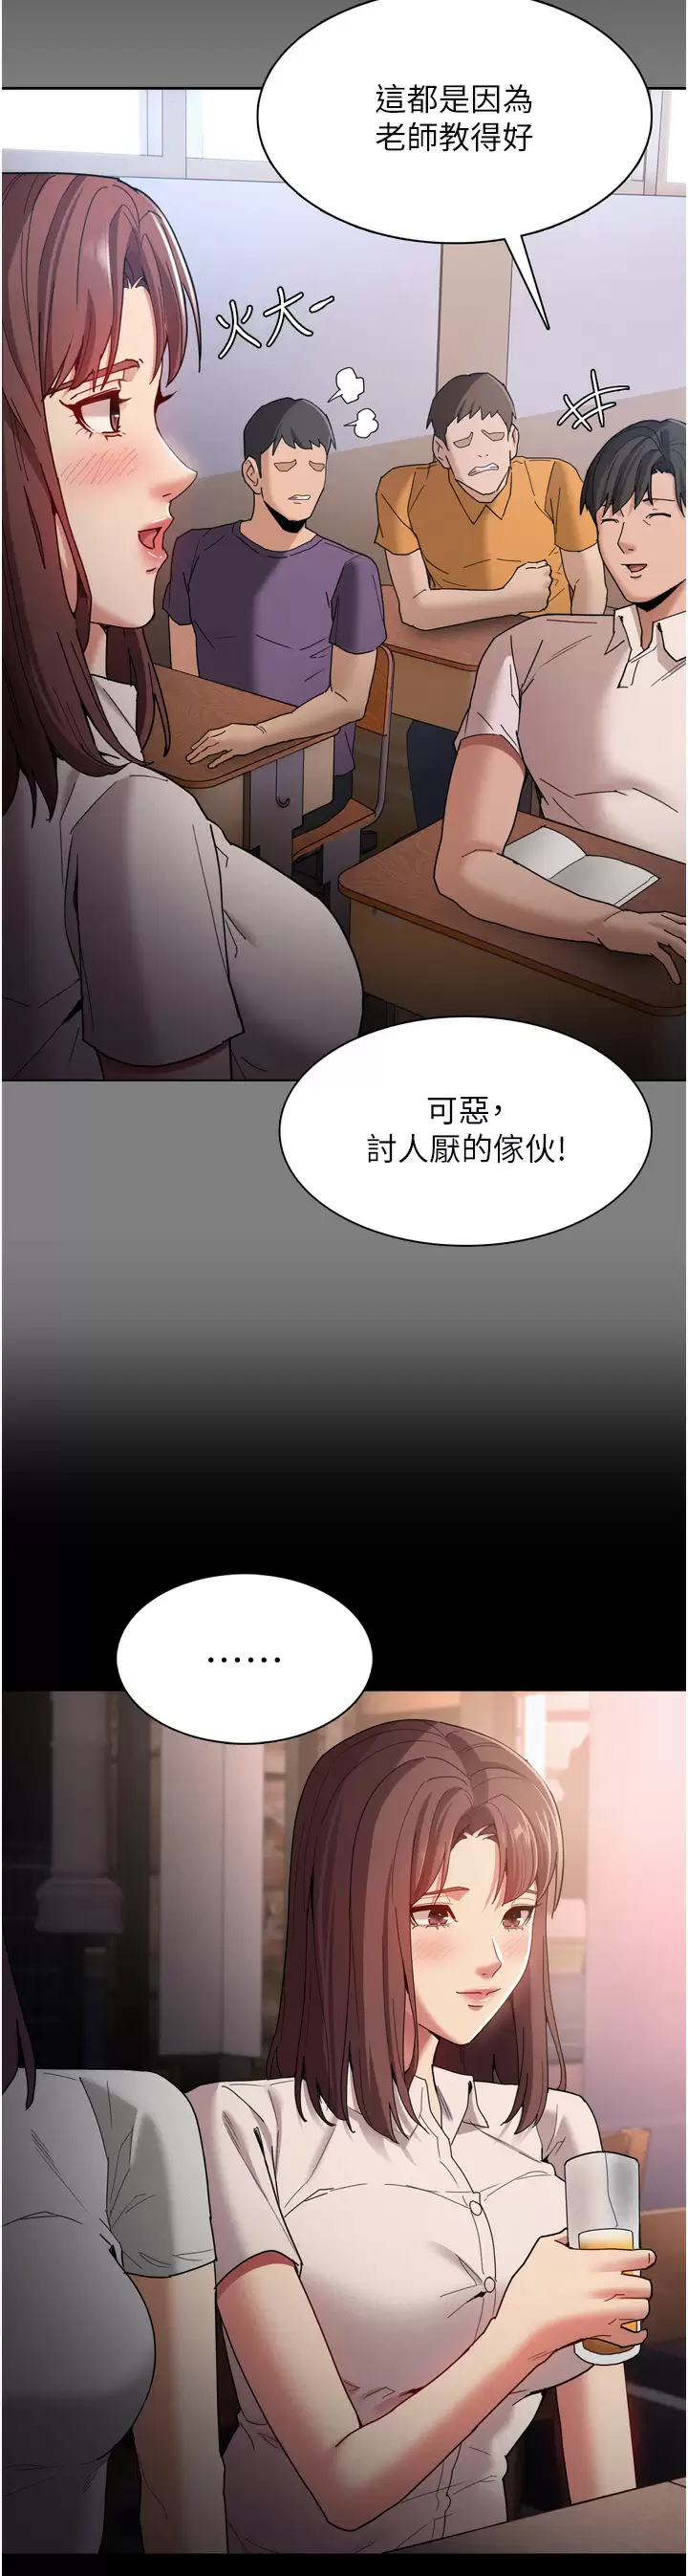 韩国污漫画 癡漢成癮 第10话 激起变态征服欲的老师 36